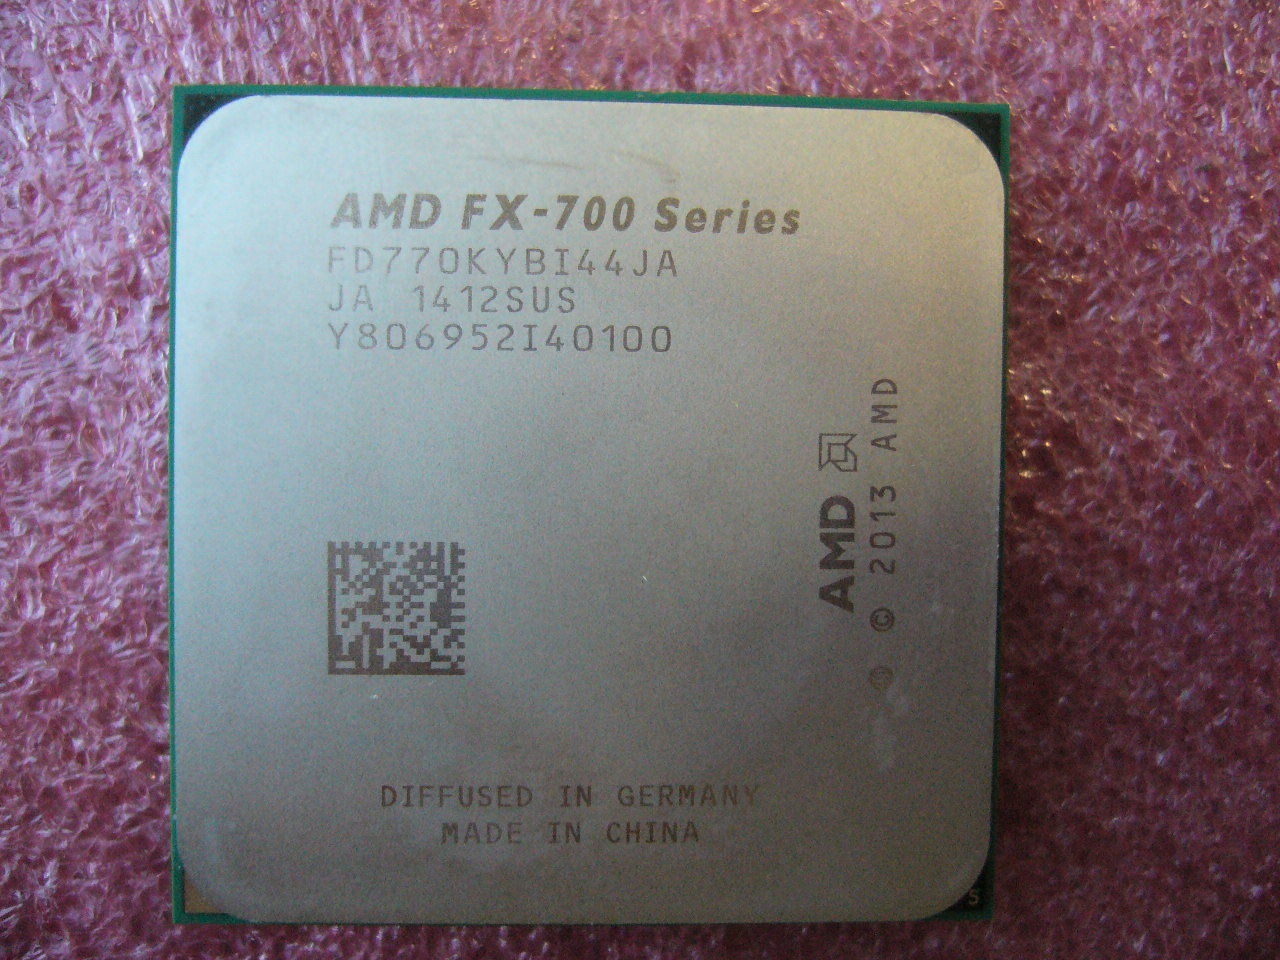 QTY 1x AMD FX-770K 3.5 GHz Quad-Core (FD770KYBI44JA) CPU Socket FM2+